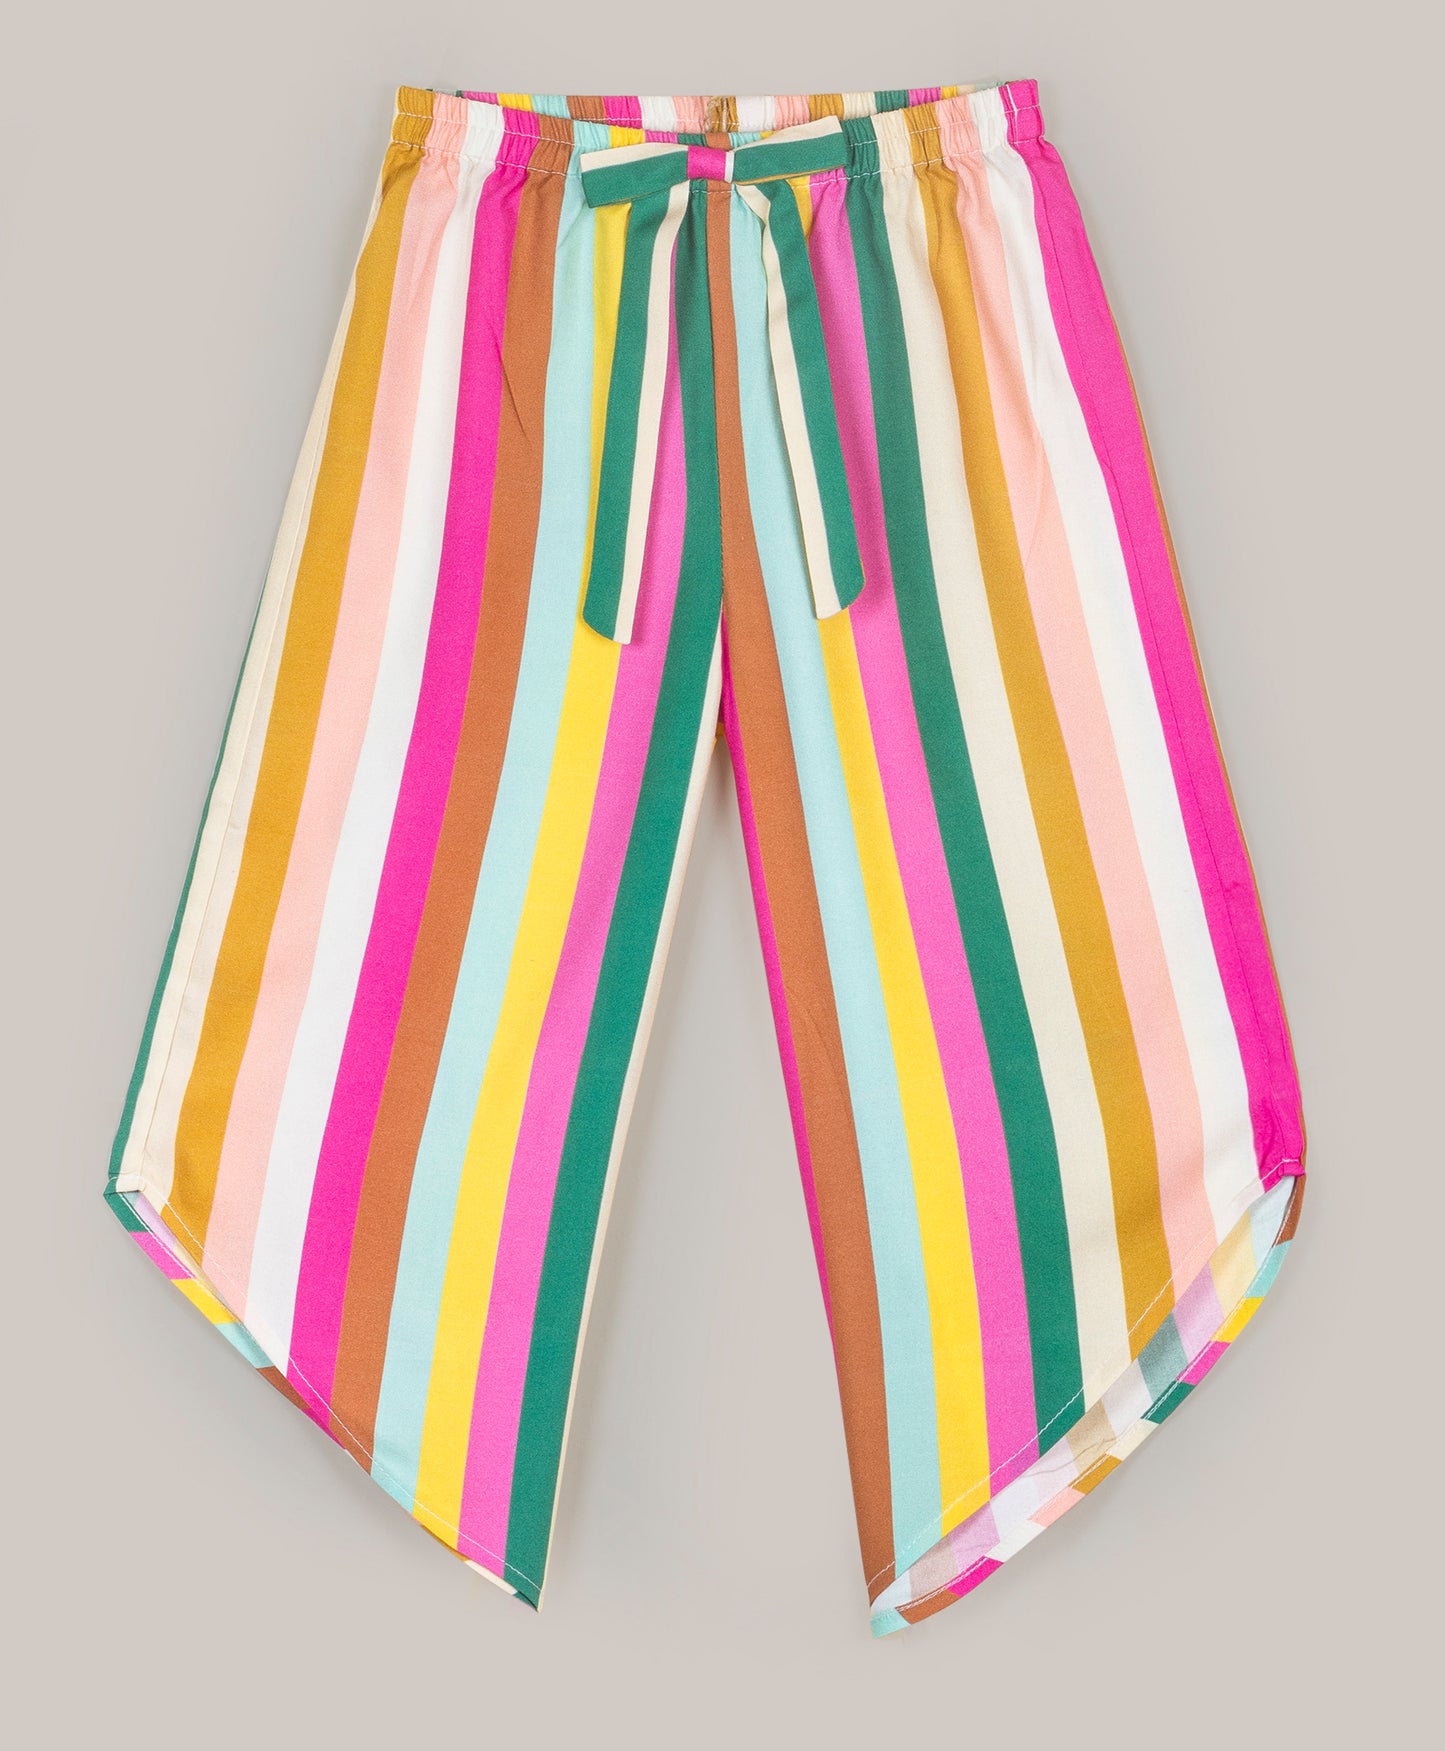 Stripe print pants